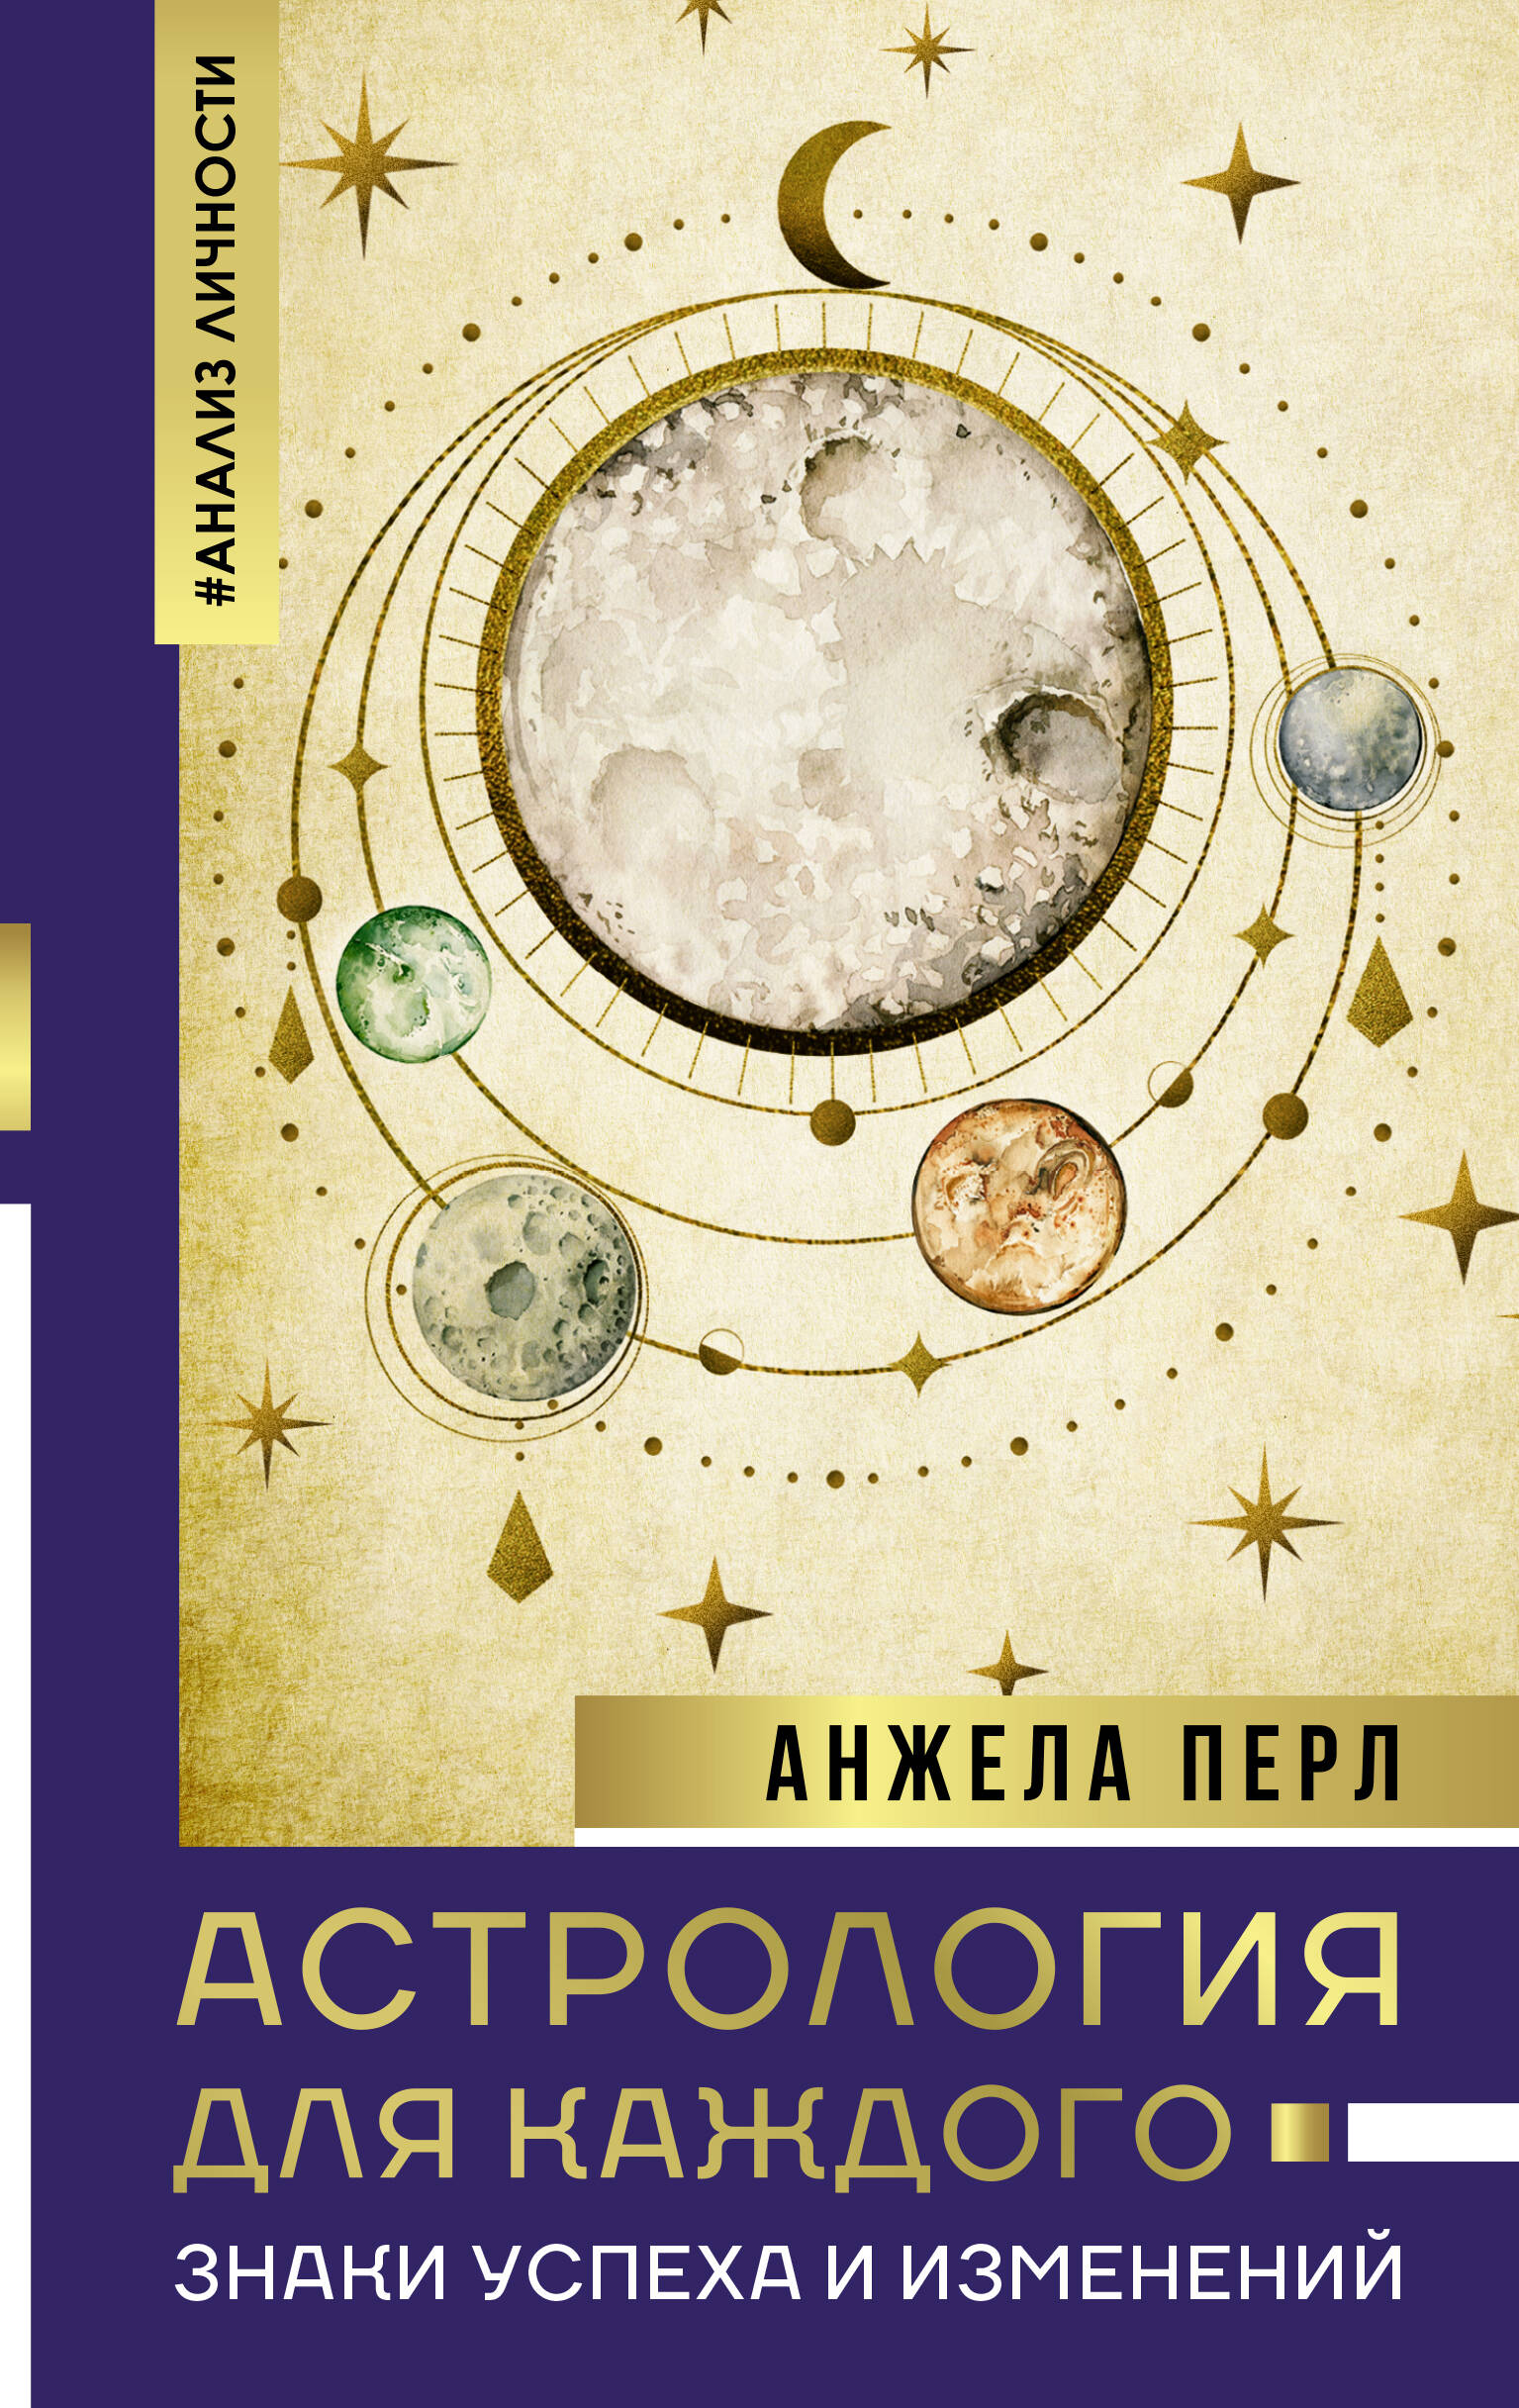 Астрология для каждого: знаки успеха и изменений бум п натальная астрология для каждого учебник